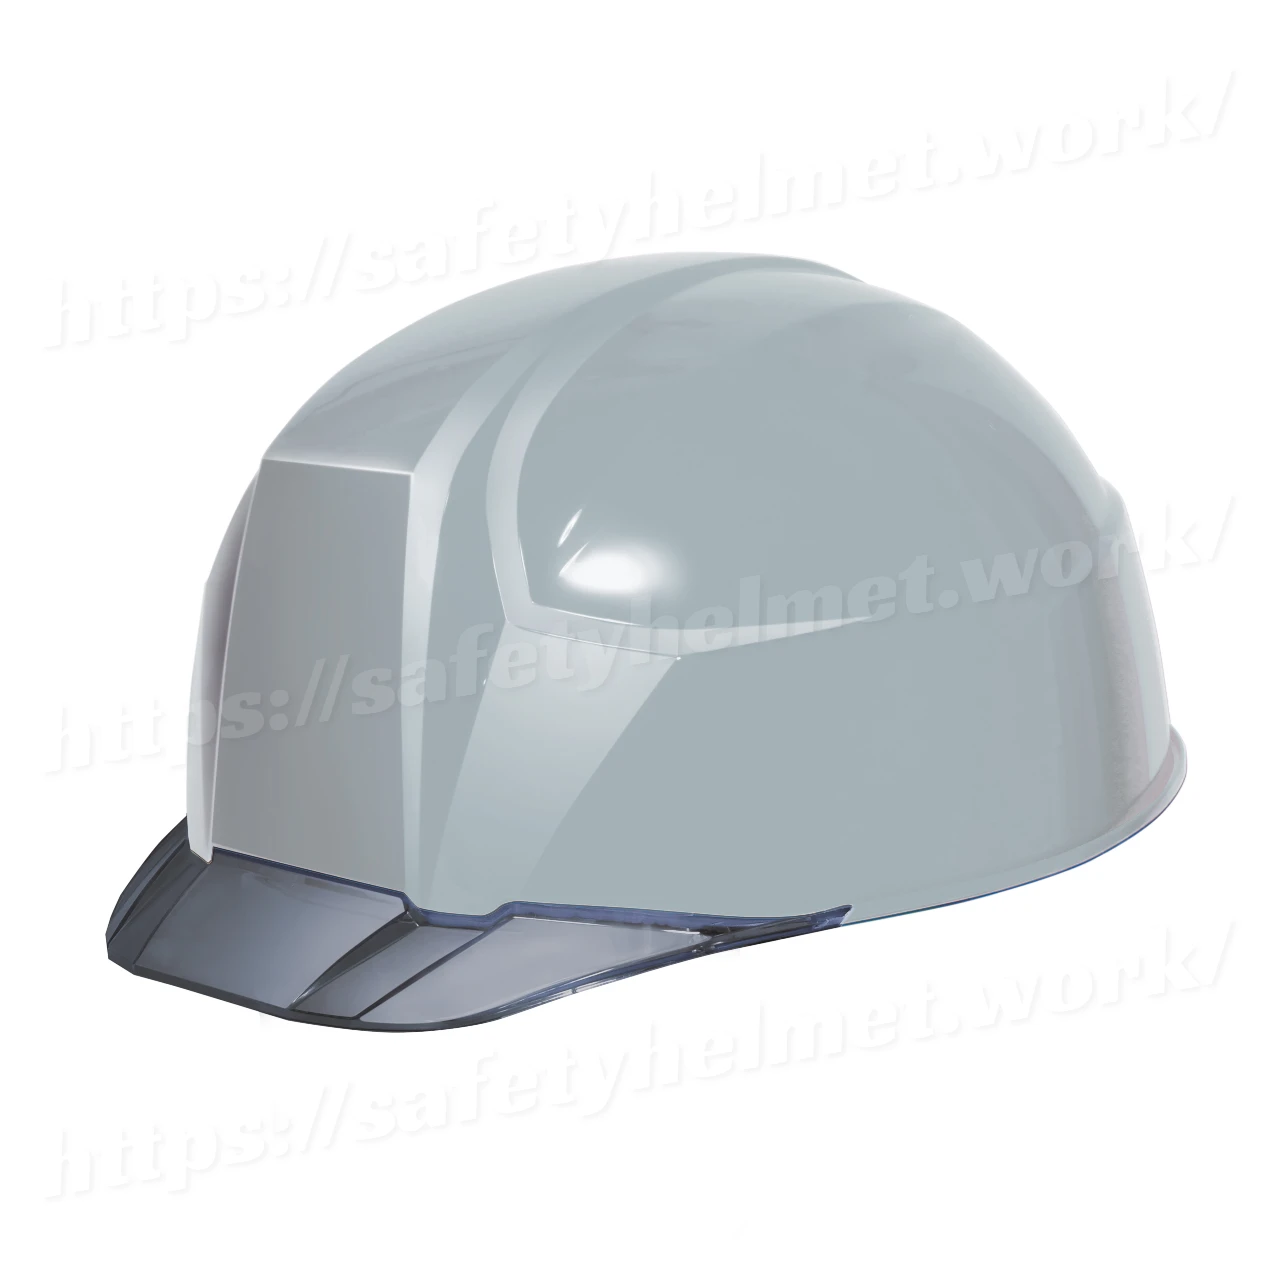 dic-lightest-helmet-keijin-clearvisor-aa23c-gray-smoke